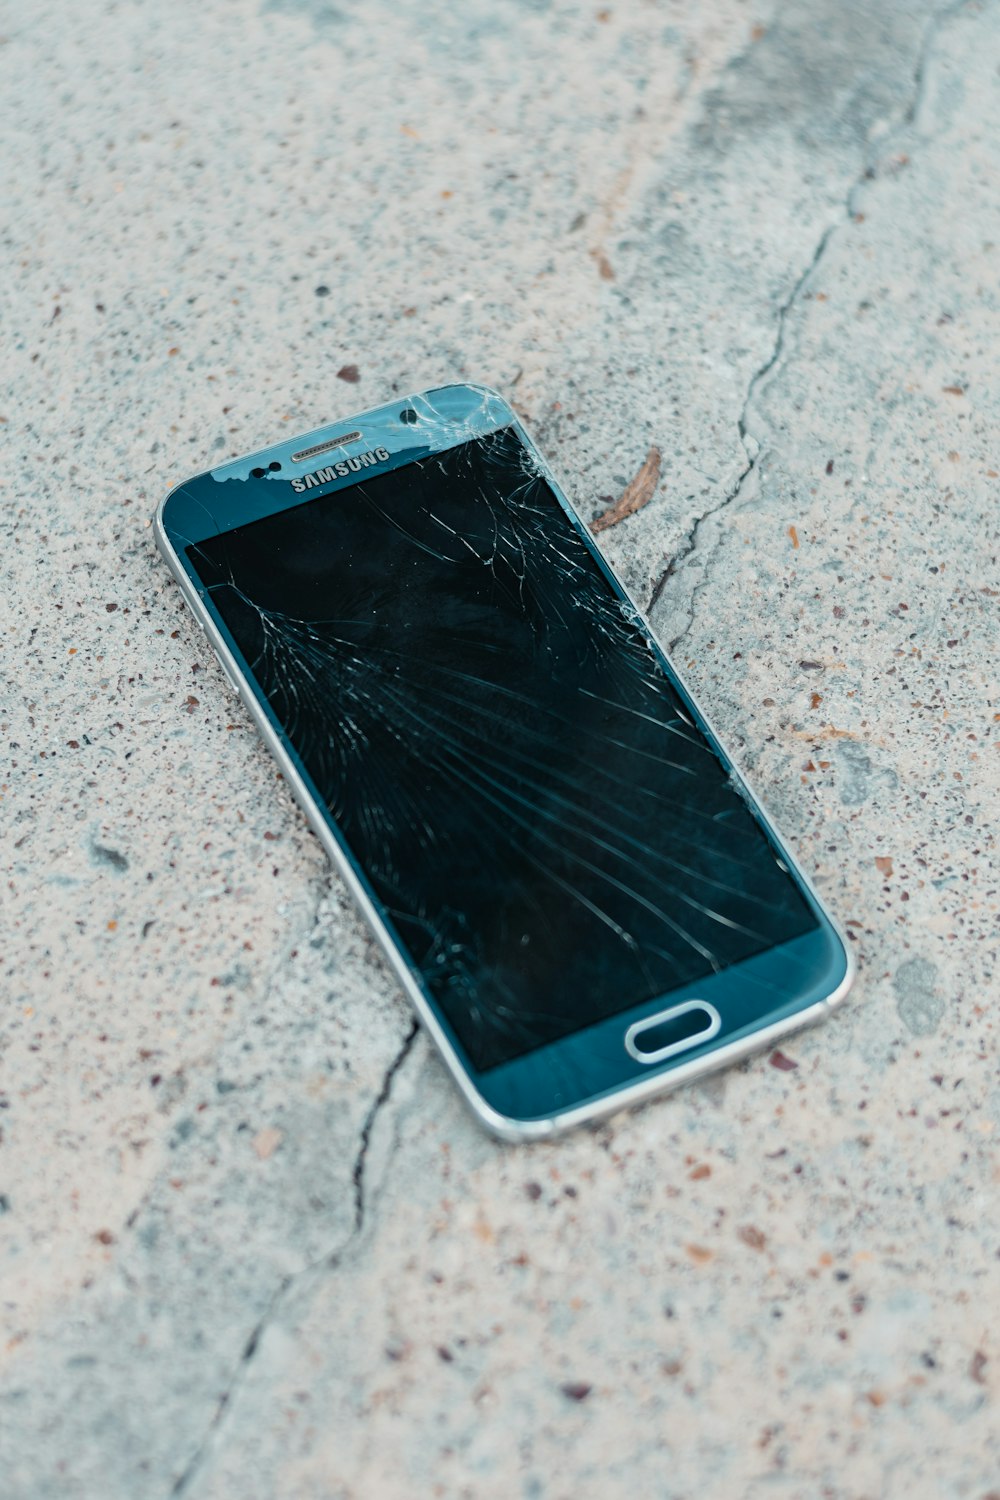 smartphone android samsung preto no chão de concreto cinza